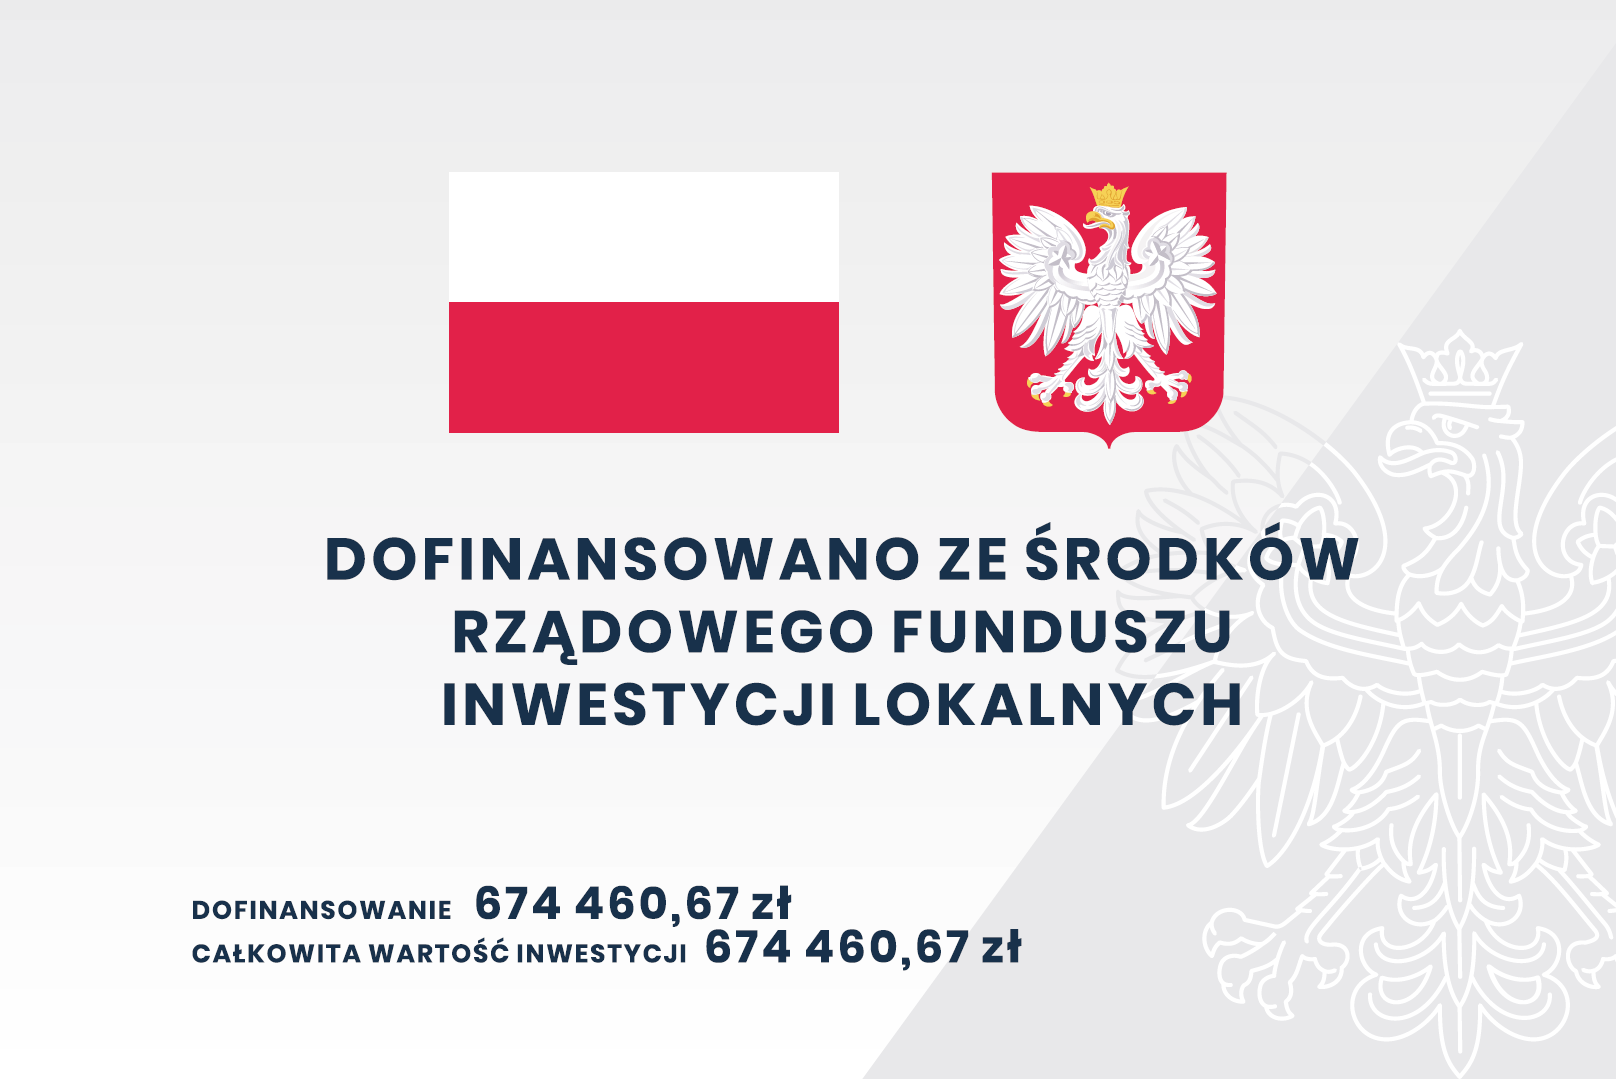 Flaga oraz Godło Polski a pod nimi tekst "Dofinansowano ze środków Rządowego Funduszu Inwestycji Lokalnych, Dofinansowanie: 674 460,67 zł, Całkowita wartość inwestycji: 674 460,67 zł"